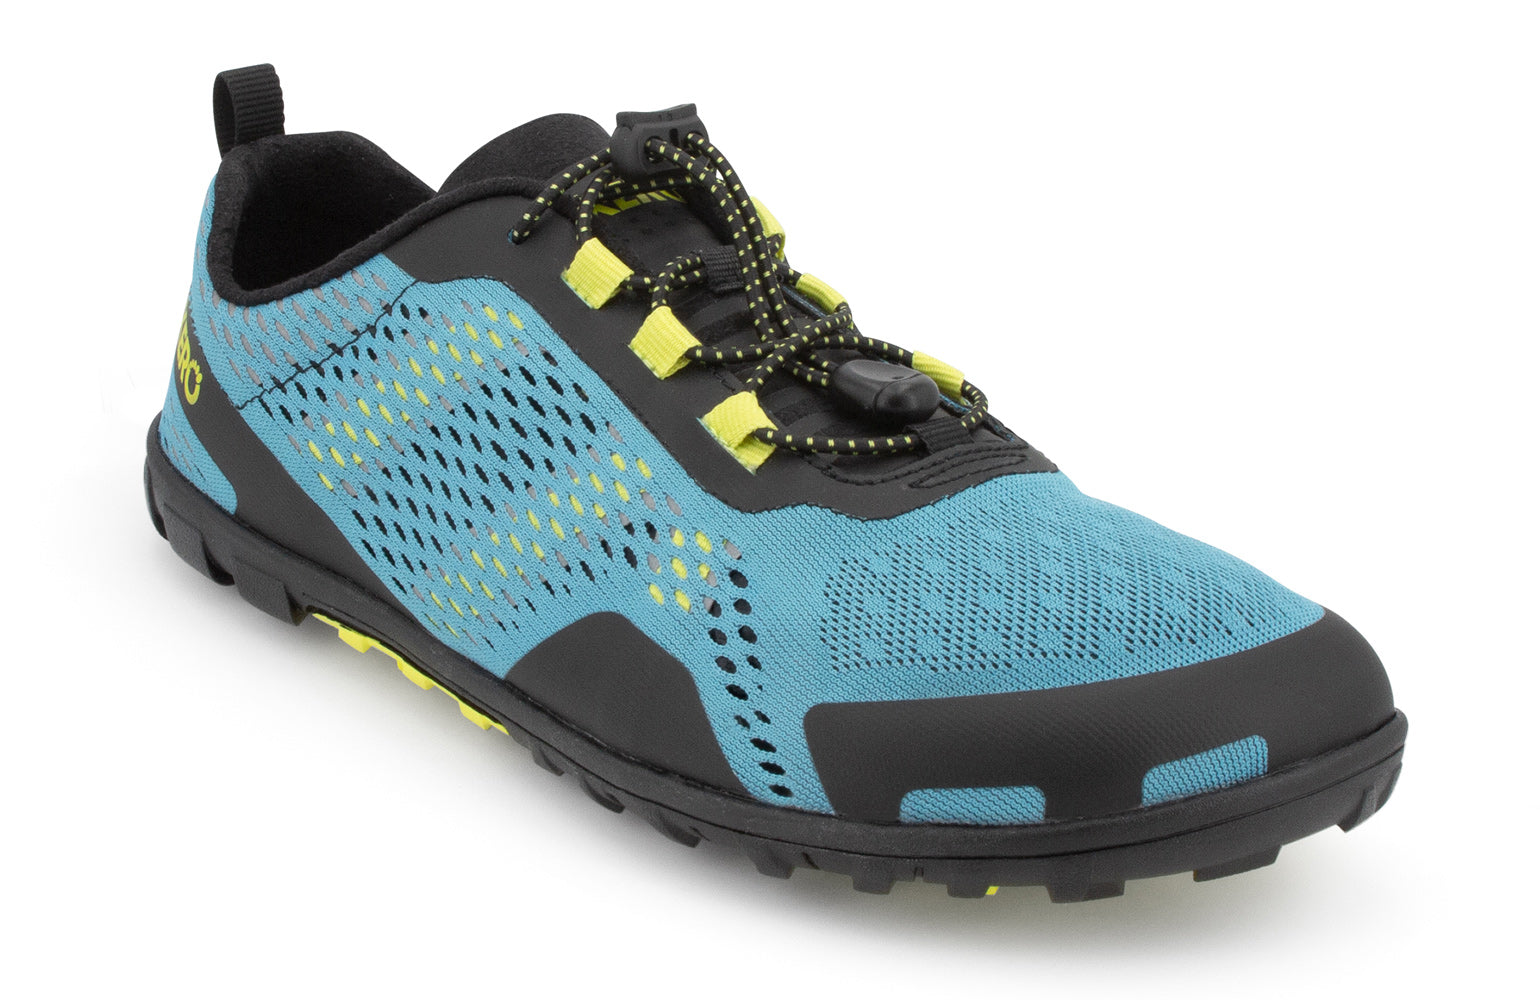 Xero Shoes Aqua X Sport barfods vand træningssko til mænd i farven surf, vinklet